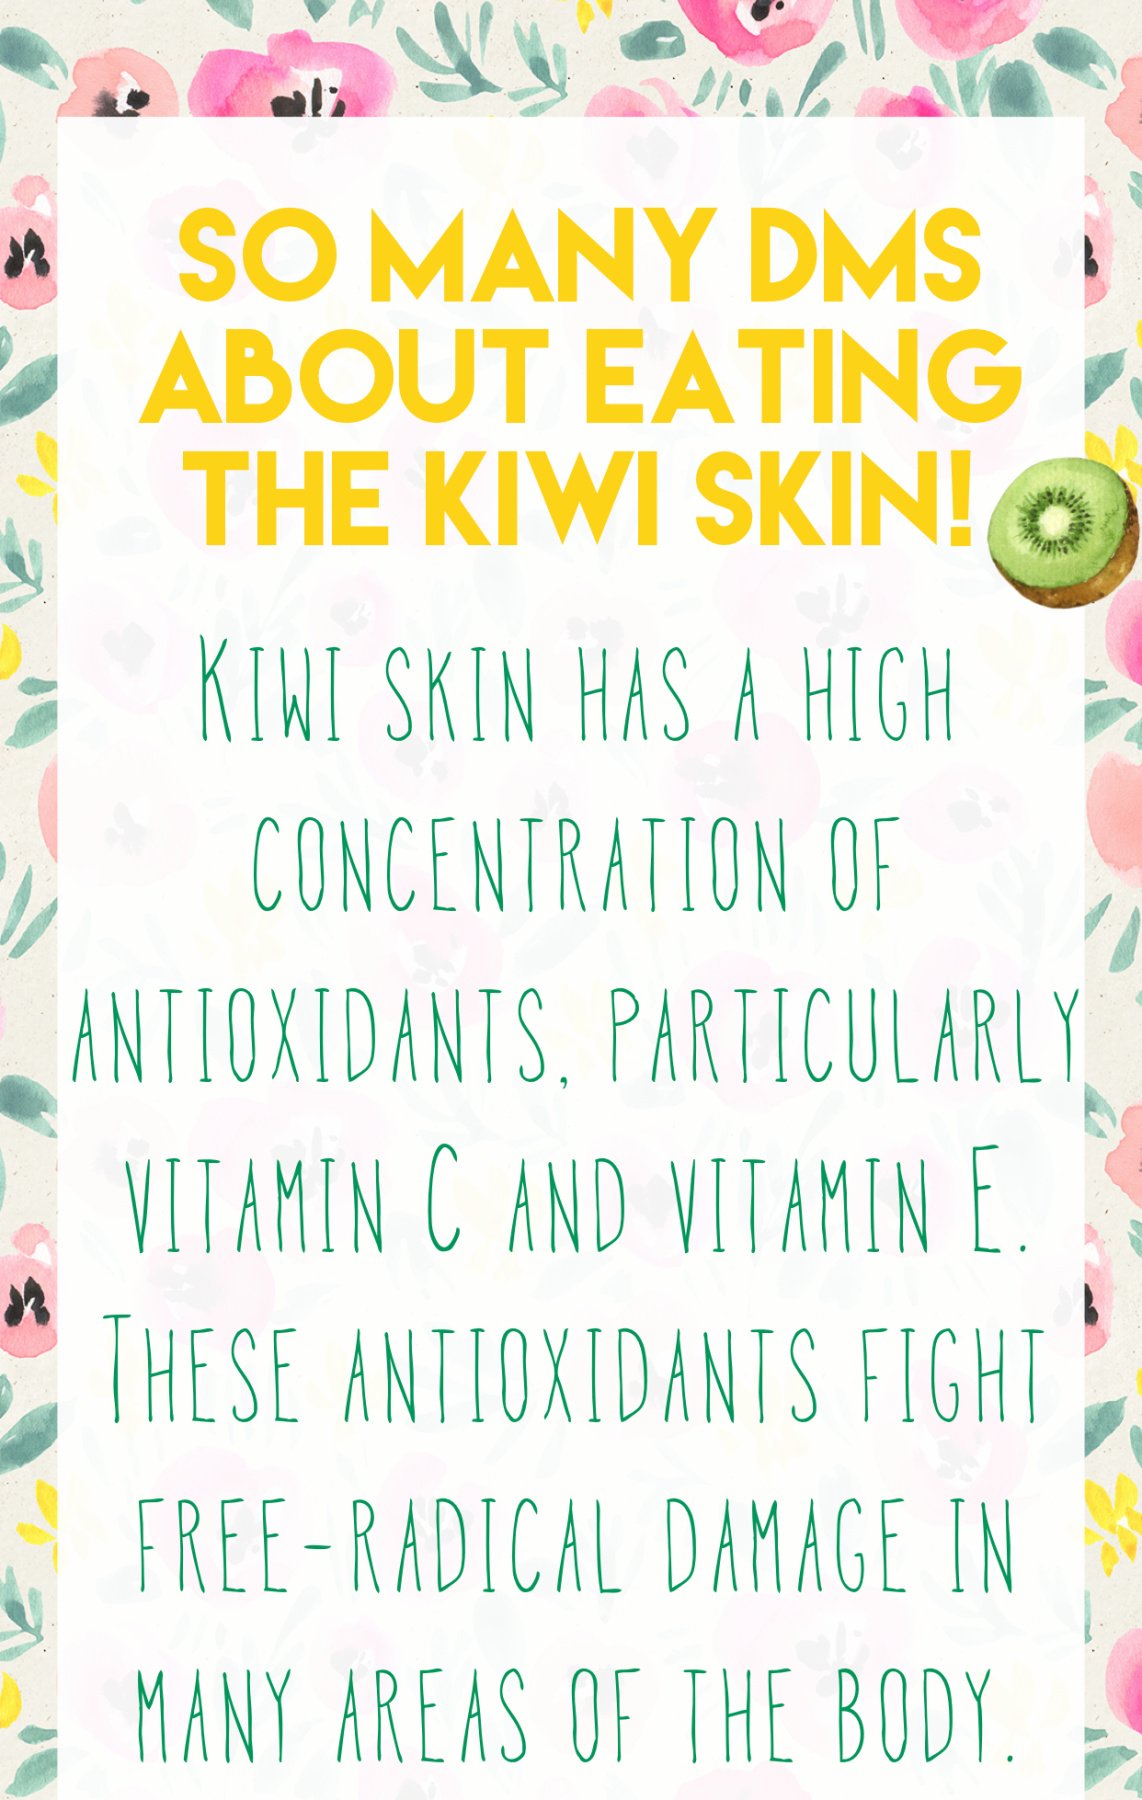 The health benefits of Kiwi skin! 